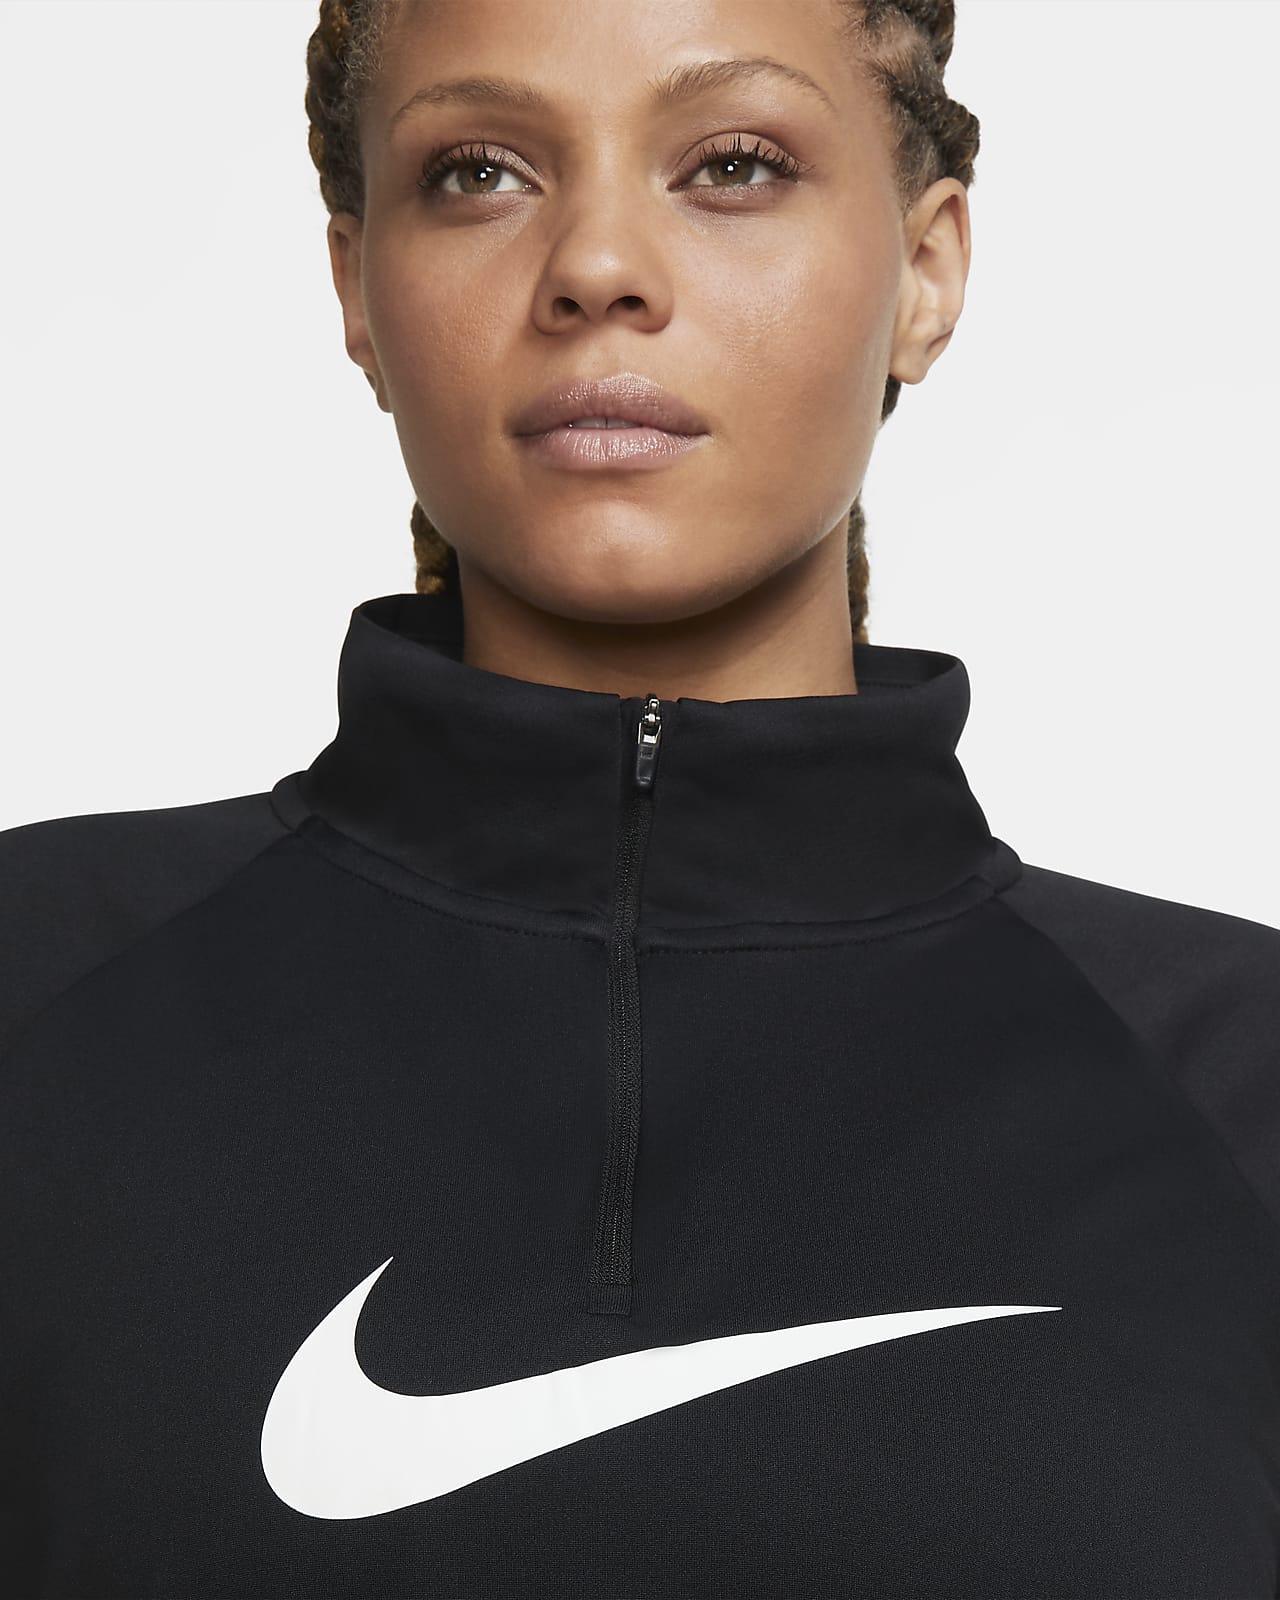 Nike Swoosh Run Women's 1/2-Zip Running 